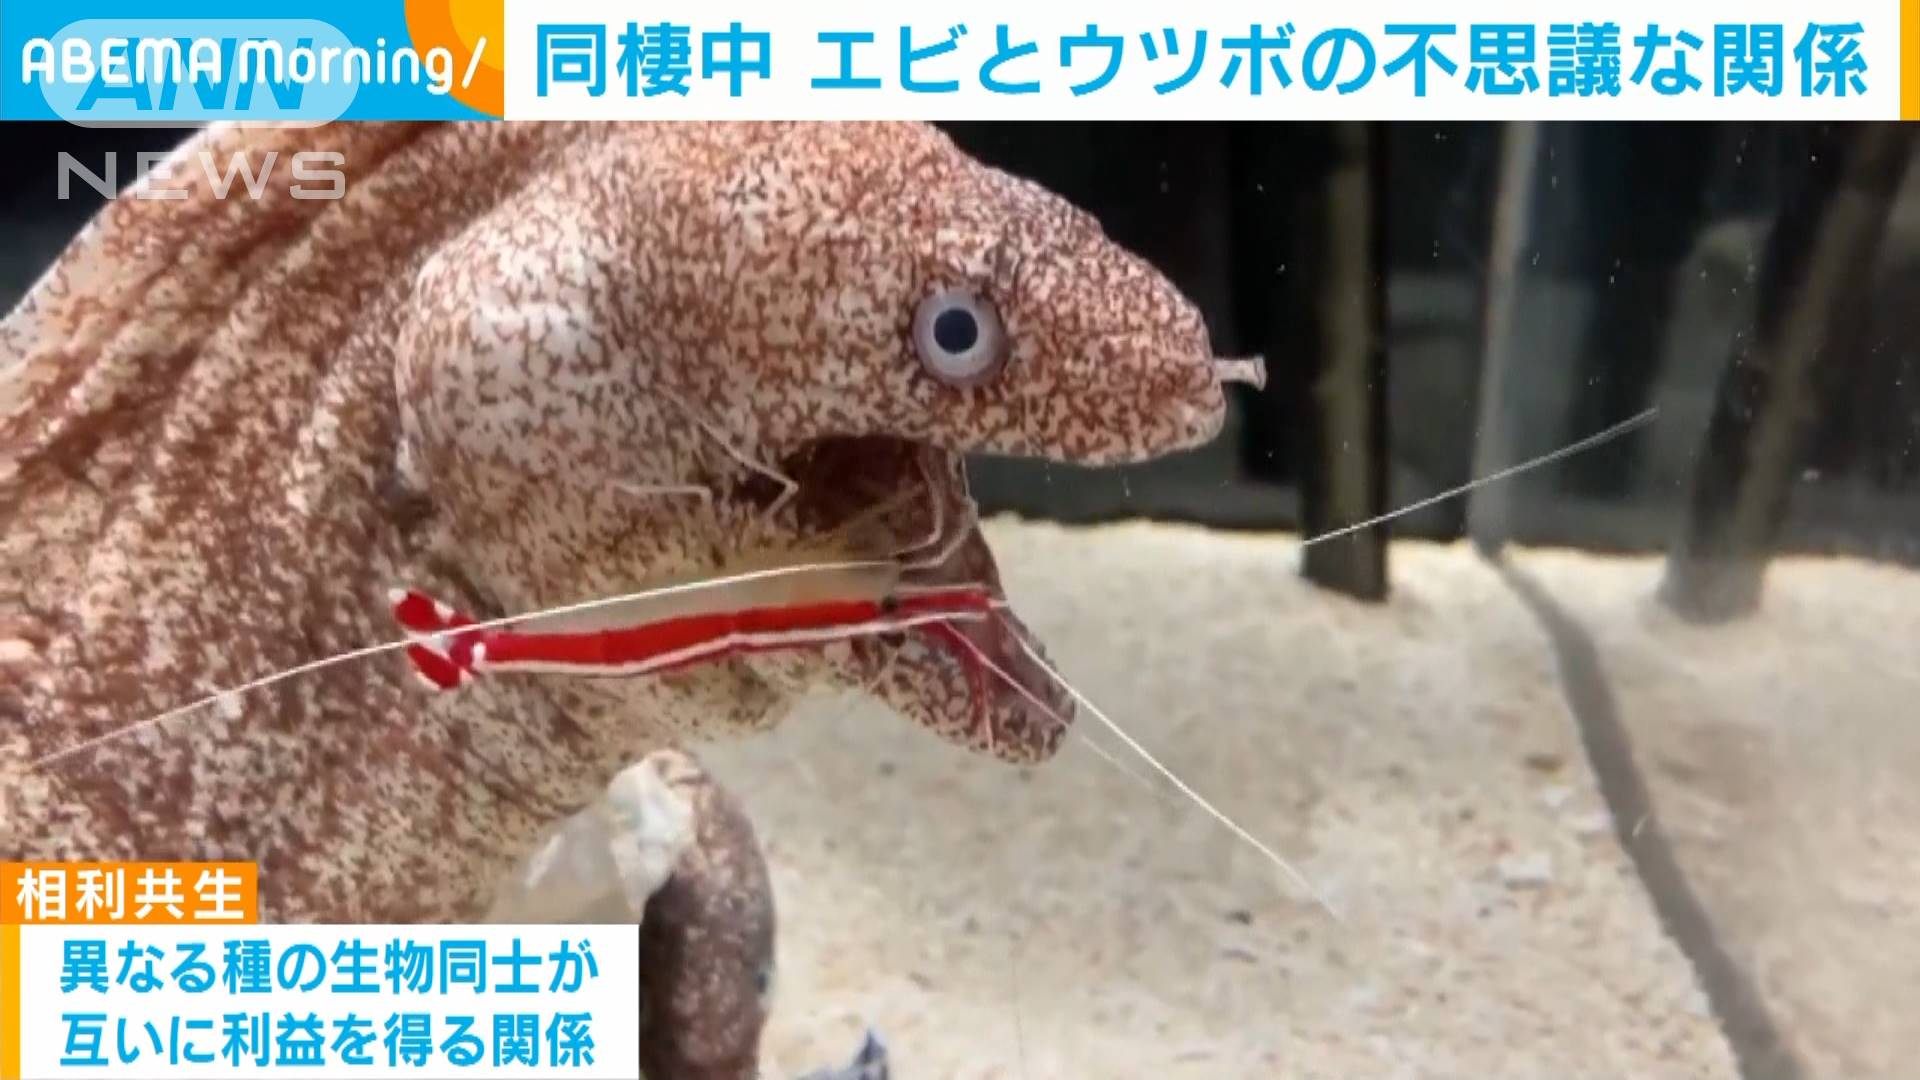 水族館で 同棲中 エビとウツボの不思議な関係 テレ朝news テレビ朝日のニュースサイト